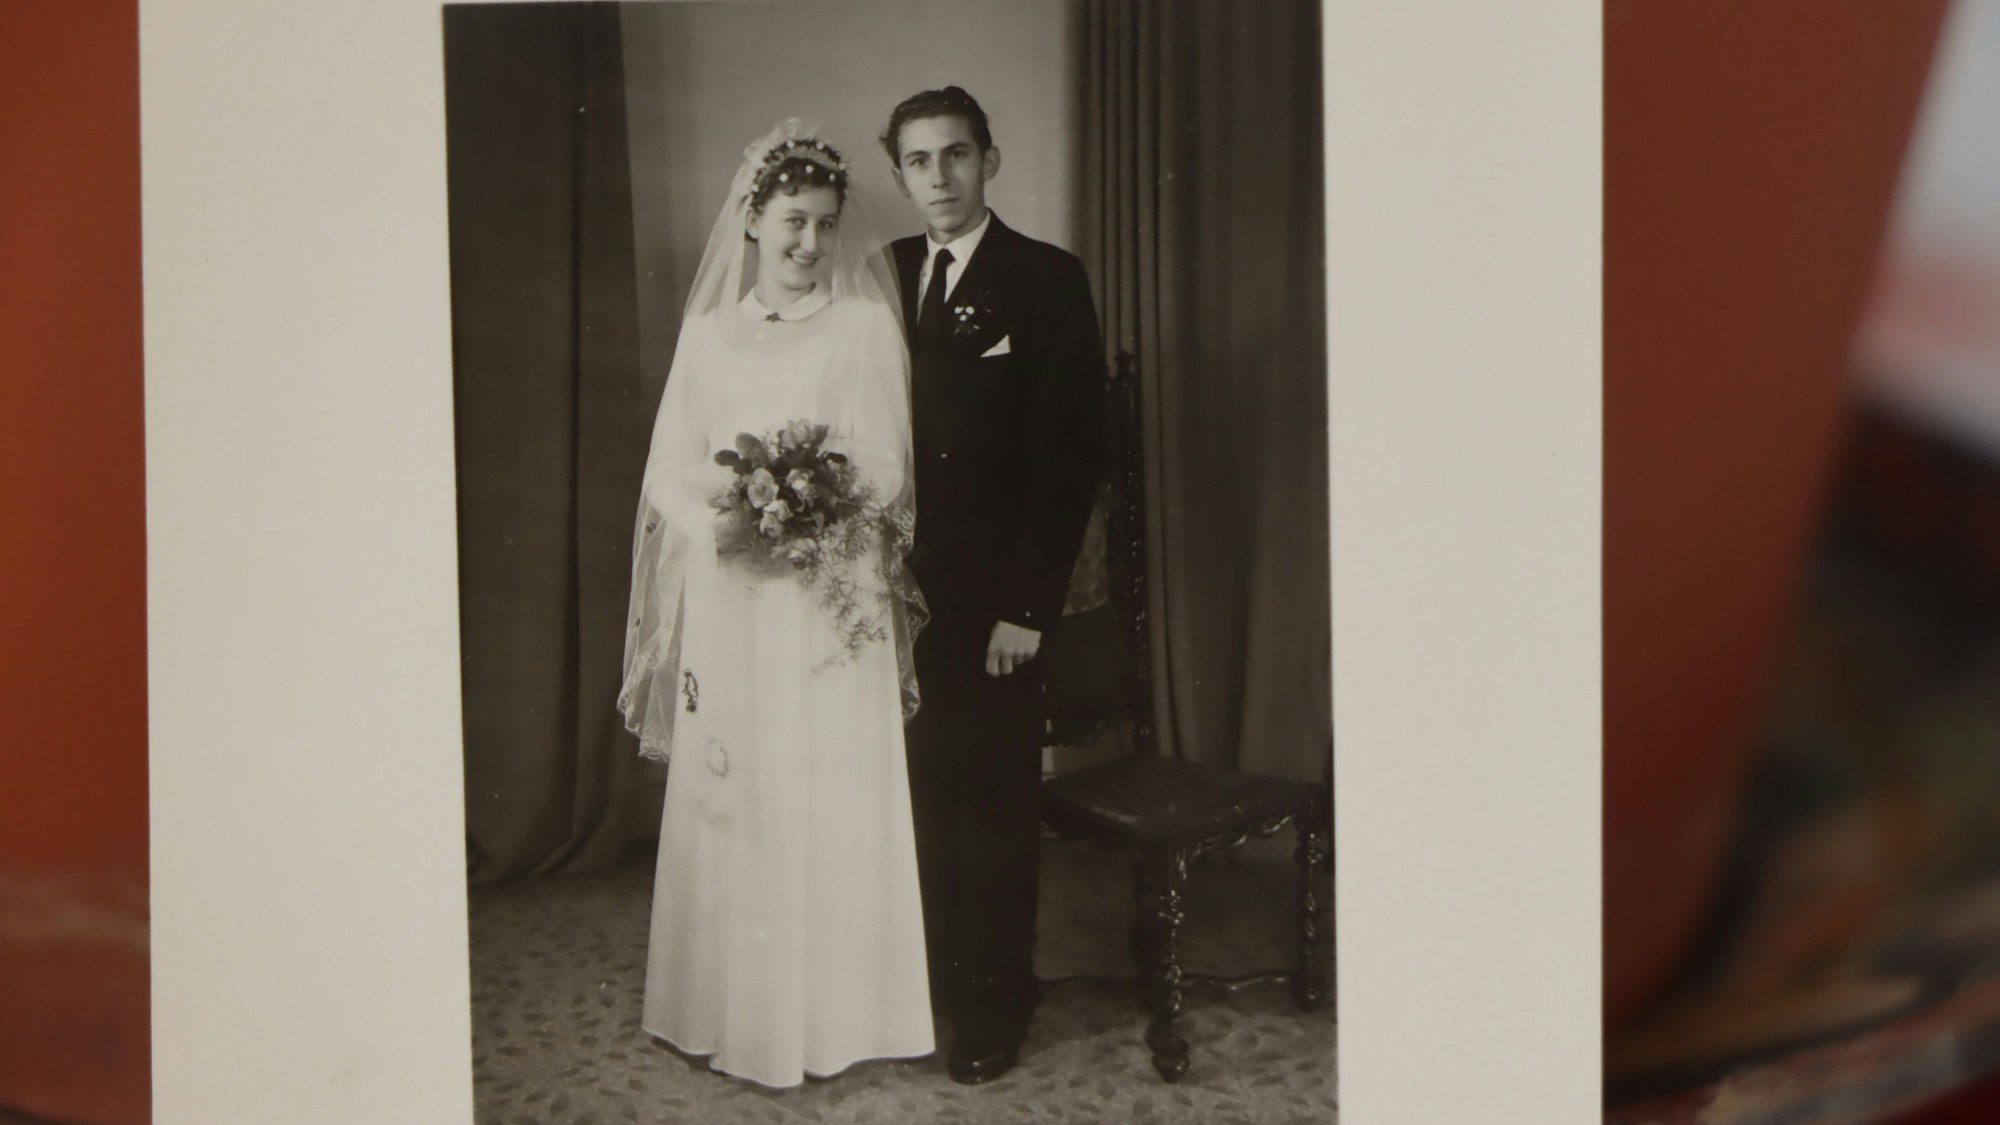 Eine alte Schwarzweiß-Fotografie zeigt ein junges Ehepaar, sie im weißen Kleid, er im dunklen Anzug.